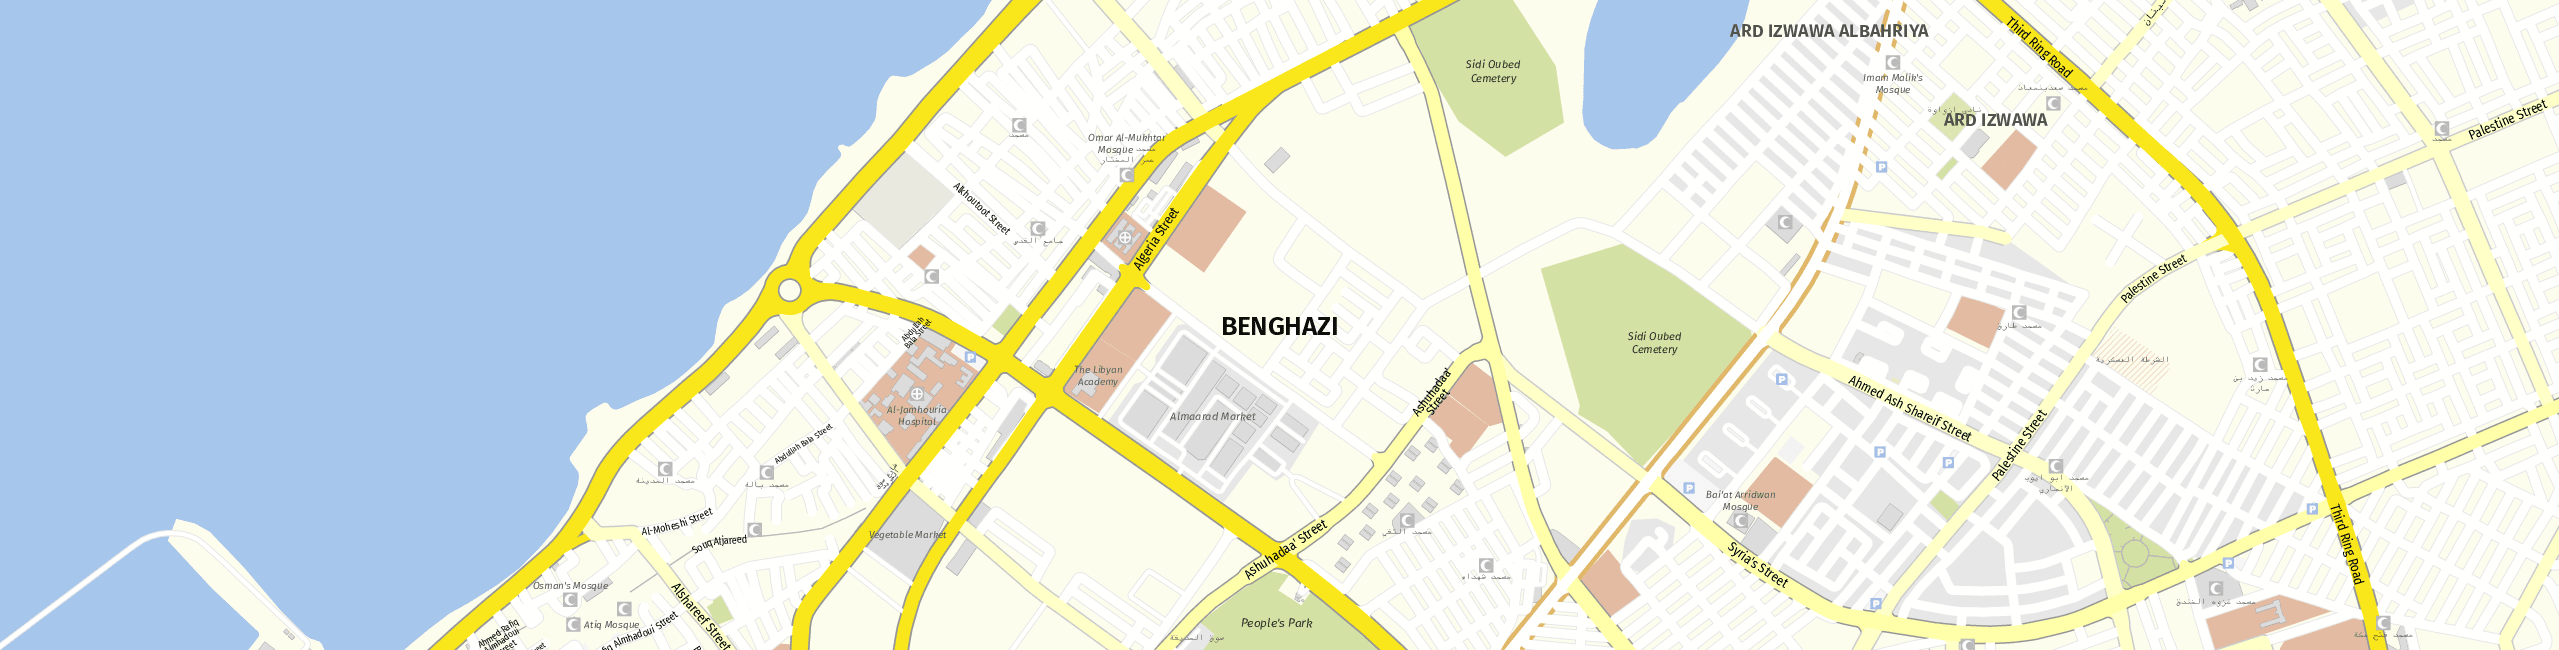 Stadtplan Benghazi zum Downloaden.